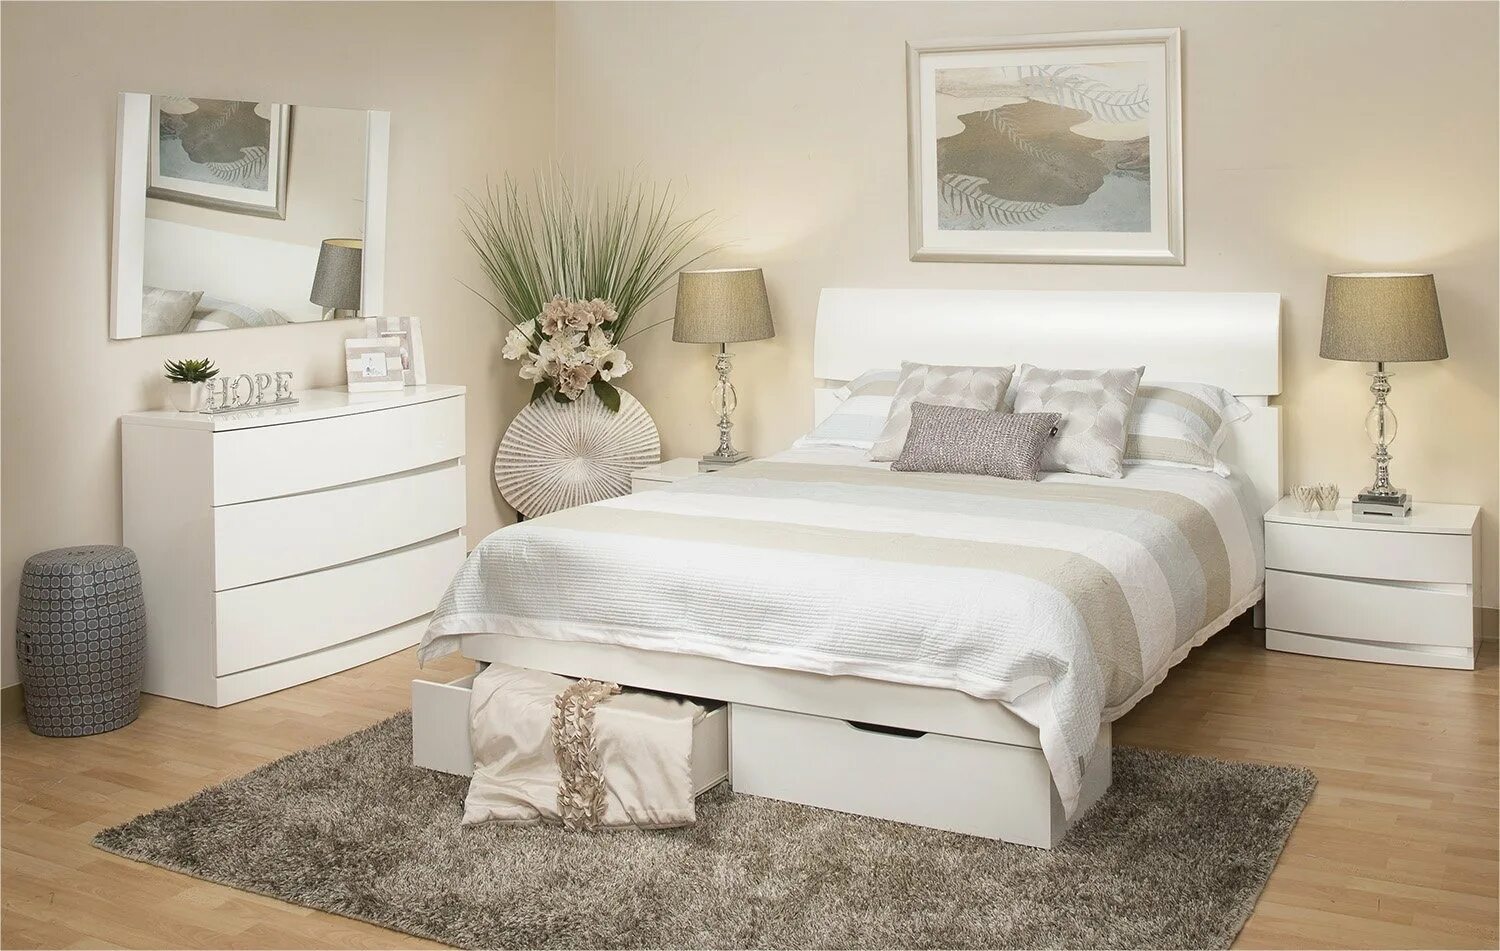 Мебель спальни белый цвет. Спальня с белой мебелью. Спальня со светлой мебелью. Спальня с бедой мебель. Спальня с белой кроватью.